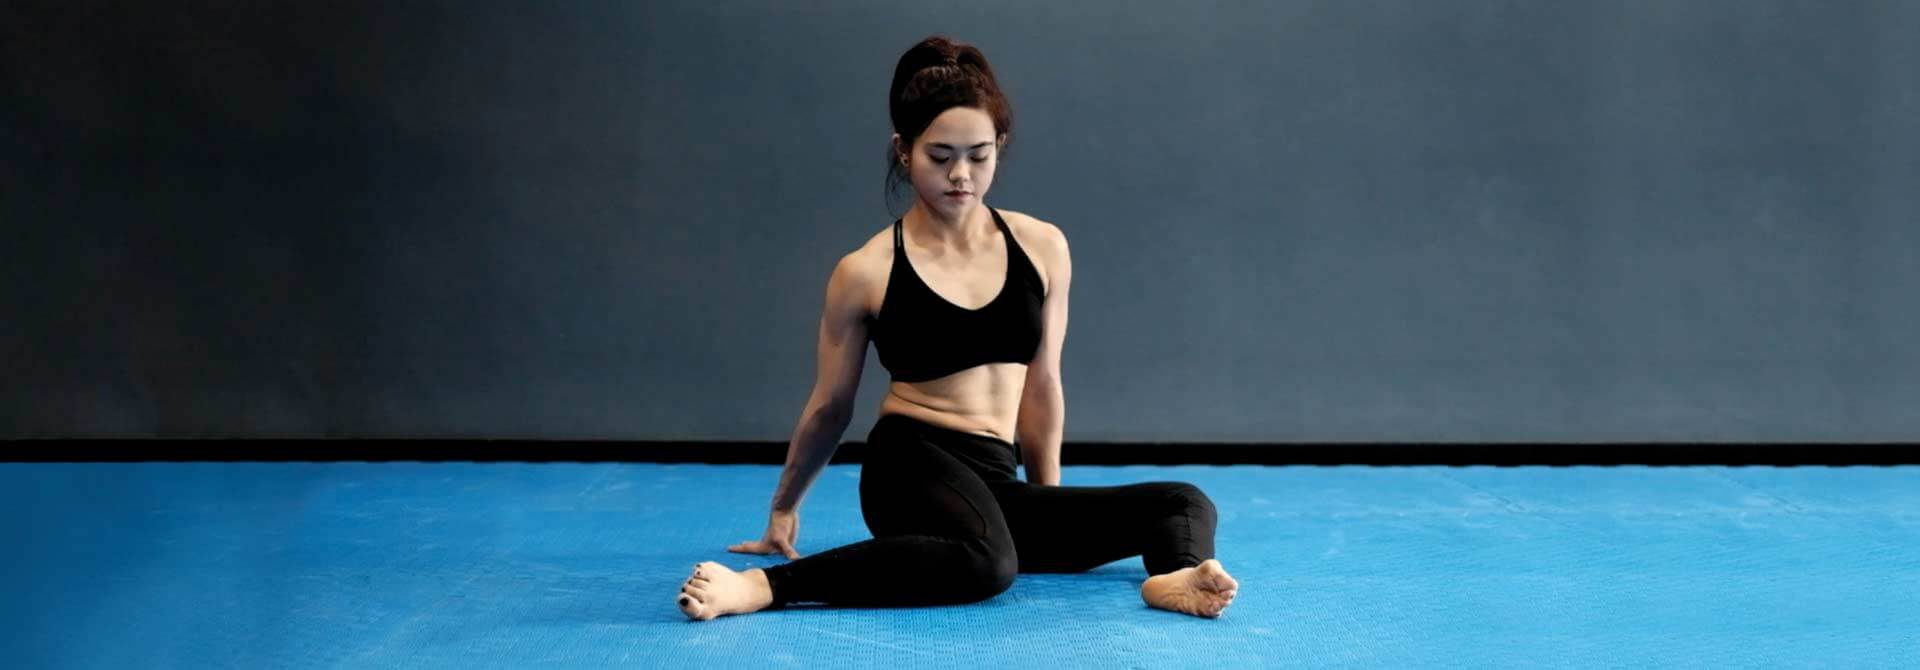 La atleta de GymnasticBodies demuestra los giros de cadera, un ejercicio que afloja suavemente las articulaciones de la cadera.